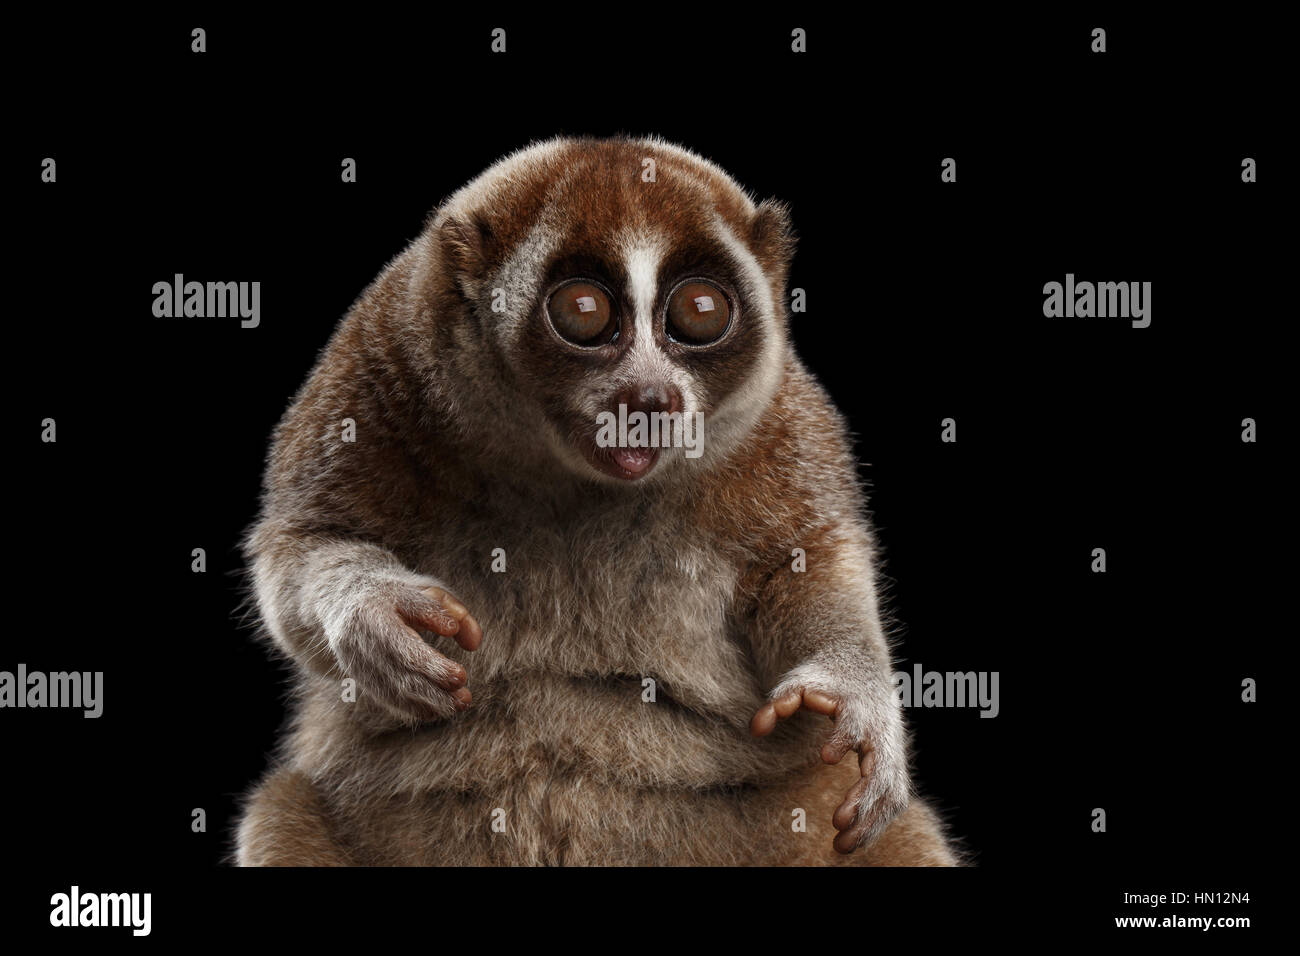 Mono lento fotografías e imágenes de alta resolución - Alamy